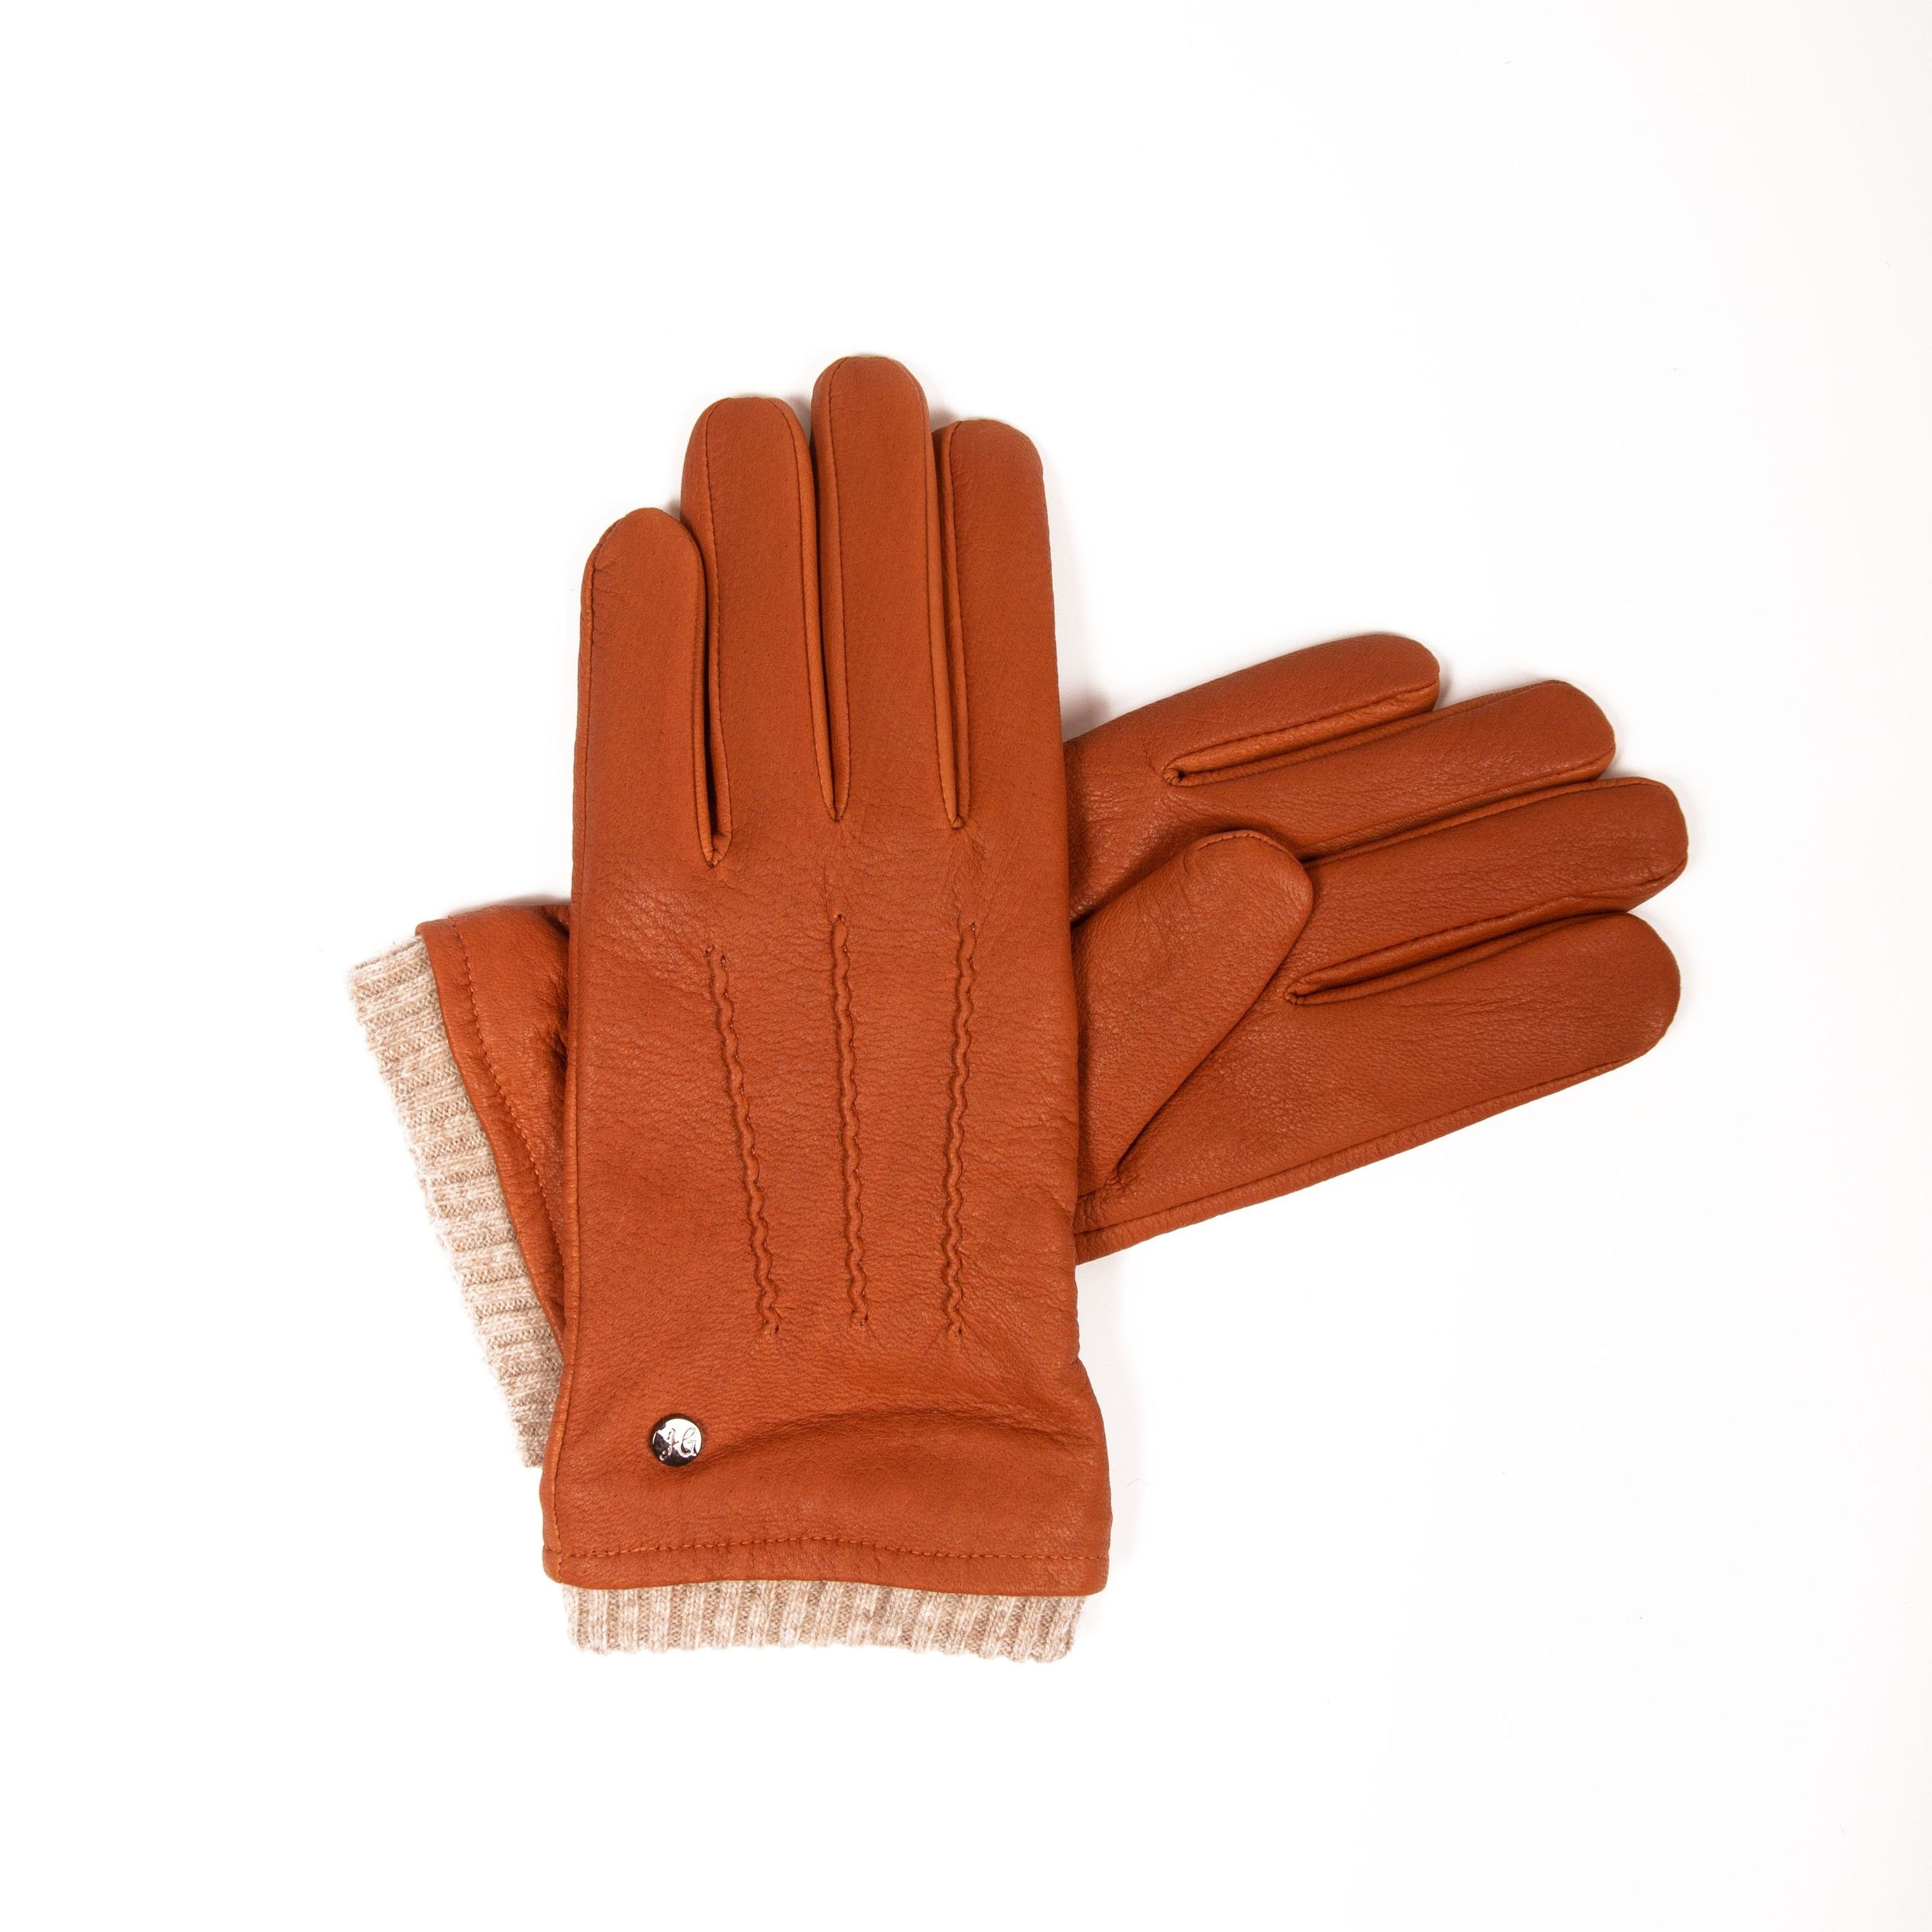 Hand Gewand by Weikert Lederhandschuhe HARRY - Hochwertige Hirschleder Handschuhe mit Kaschmir Fütterung Camel